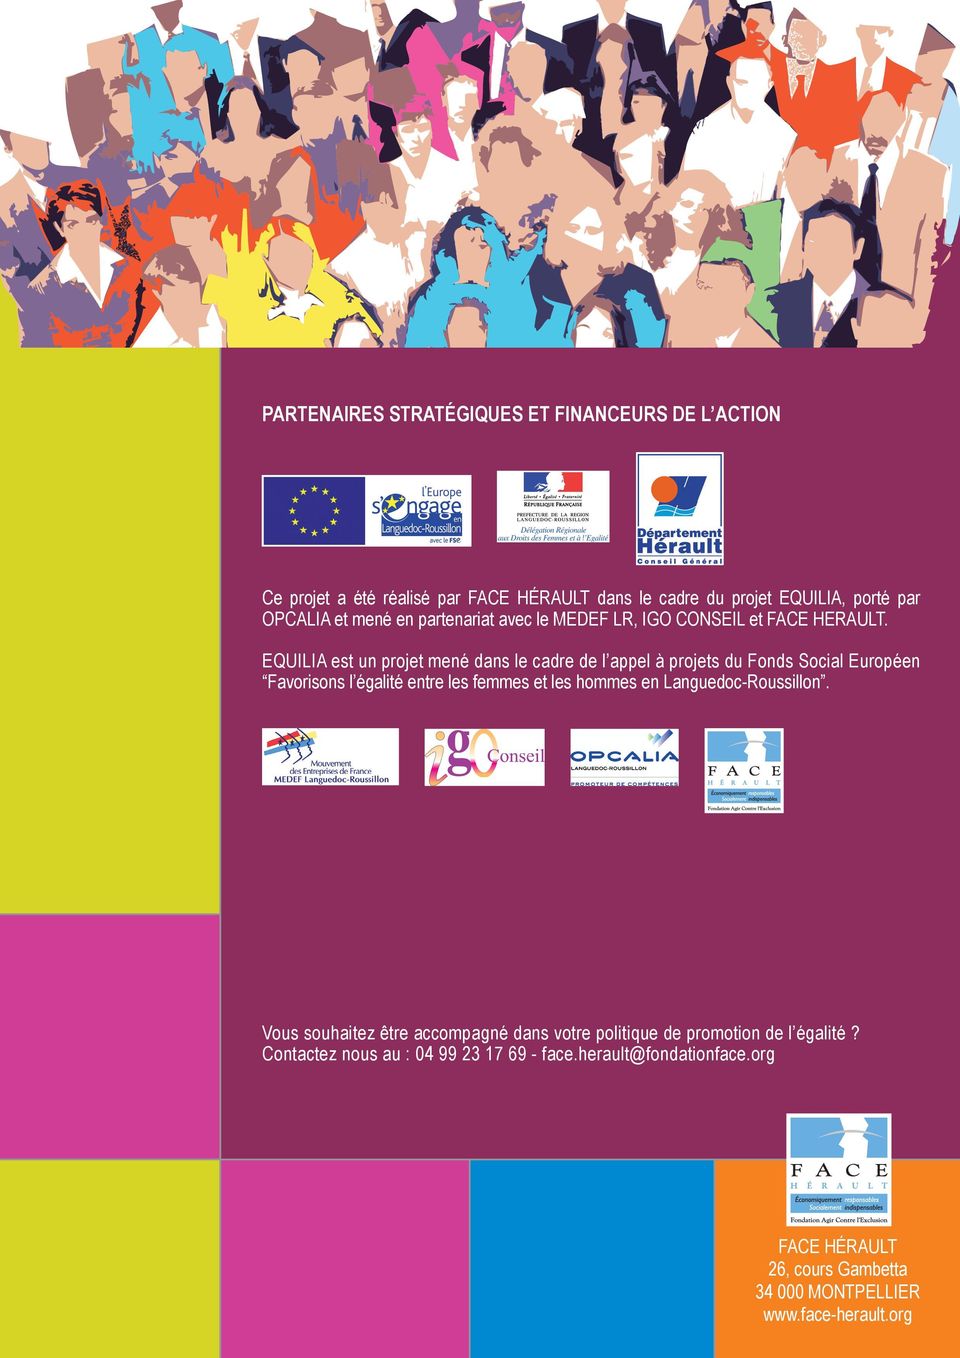 EQUILIA est un projet mené dans le cadre de l appel à projets du Fonds Social Européen Favorisons l égalité entre les femmes et les hommes en